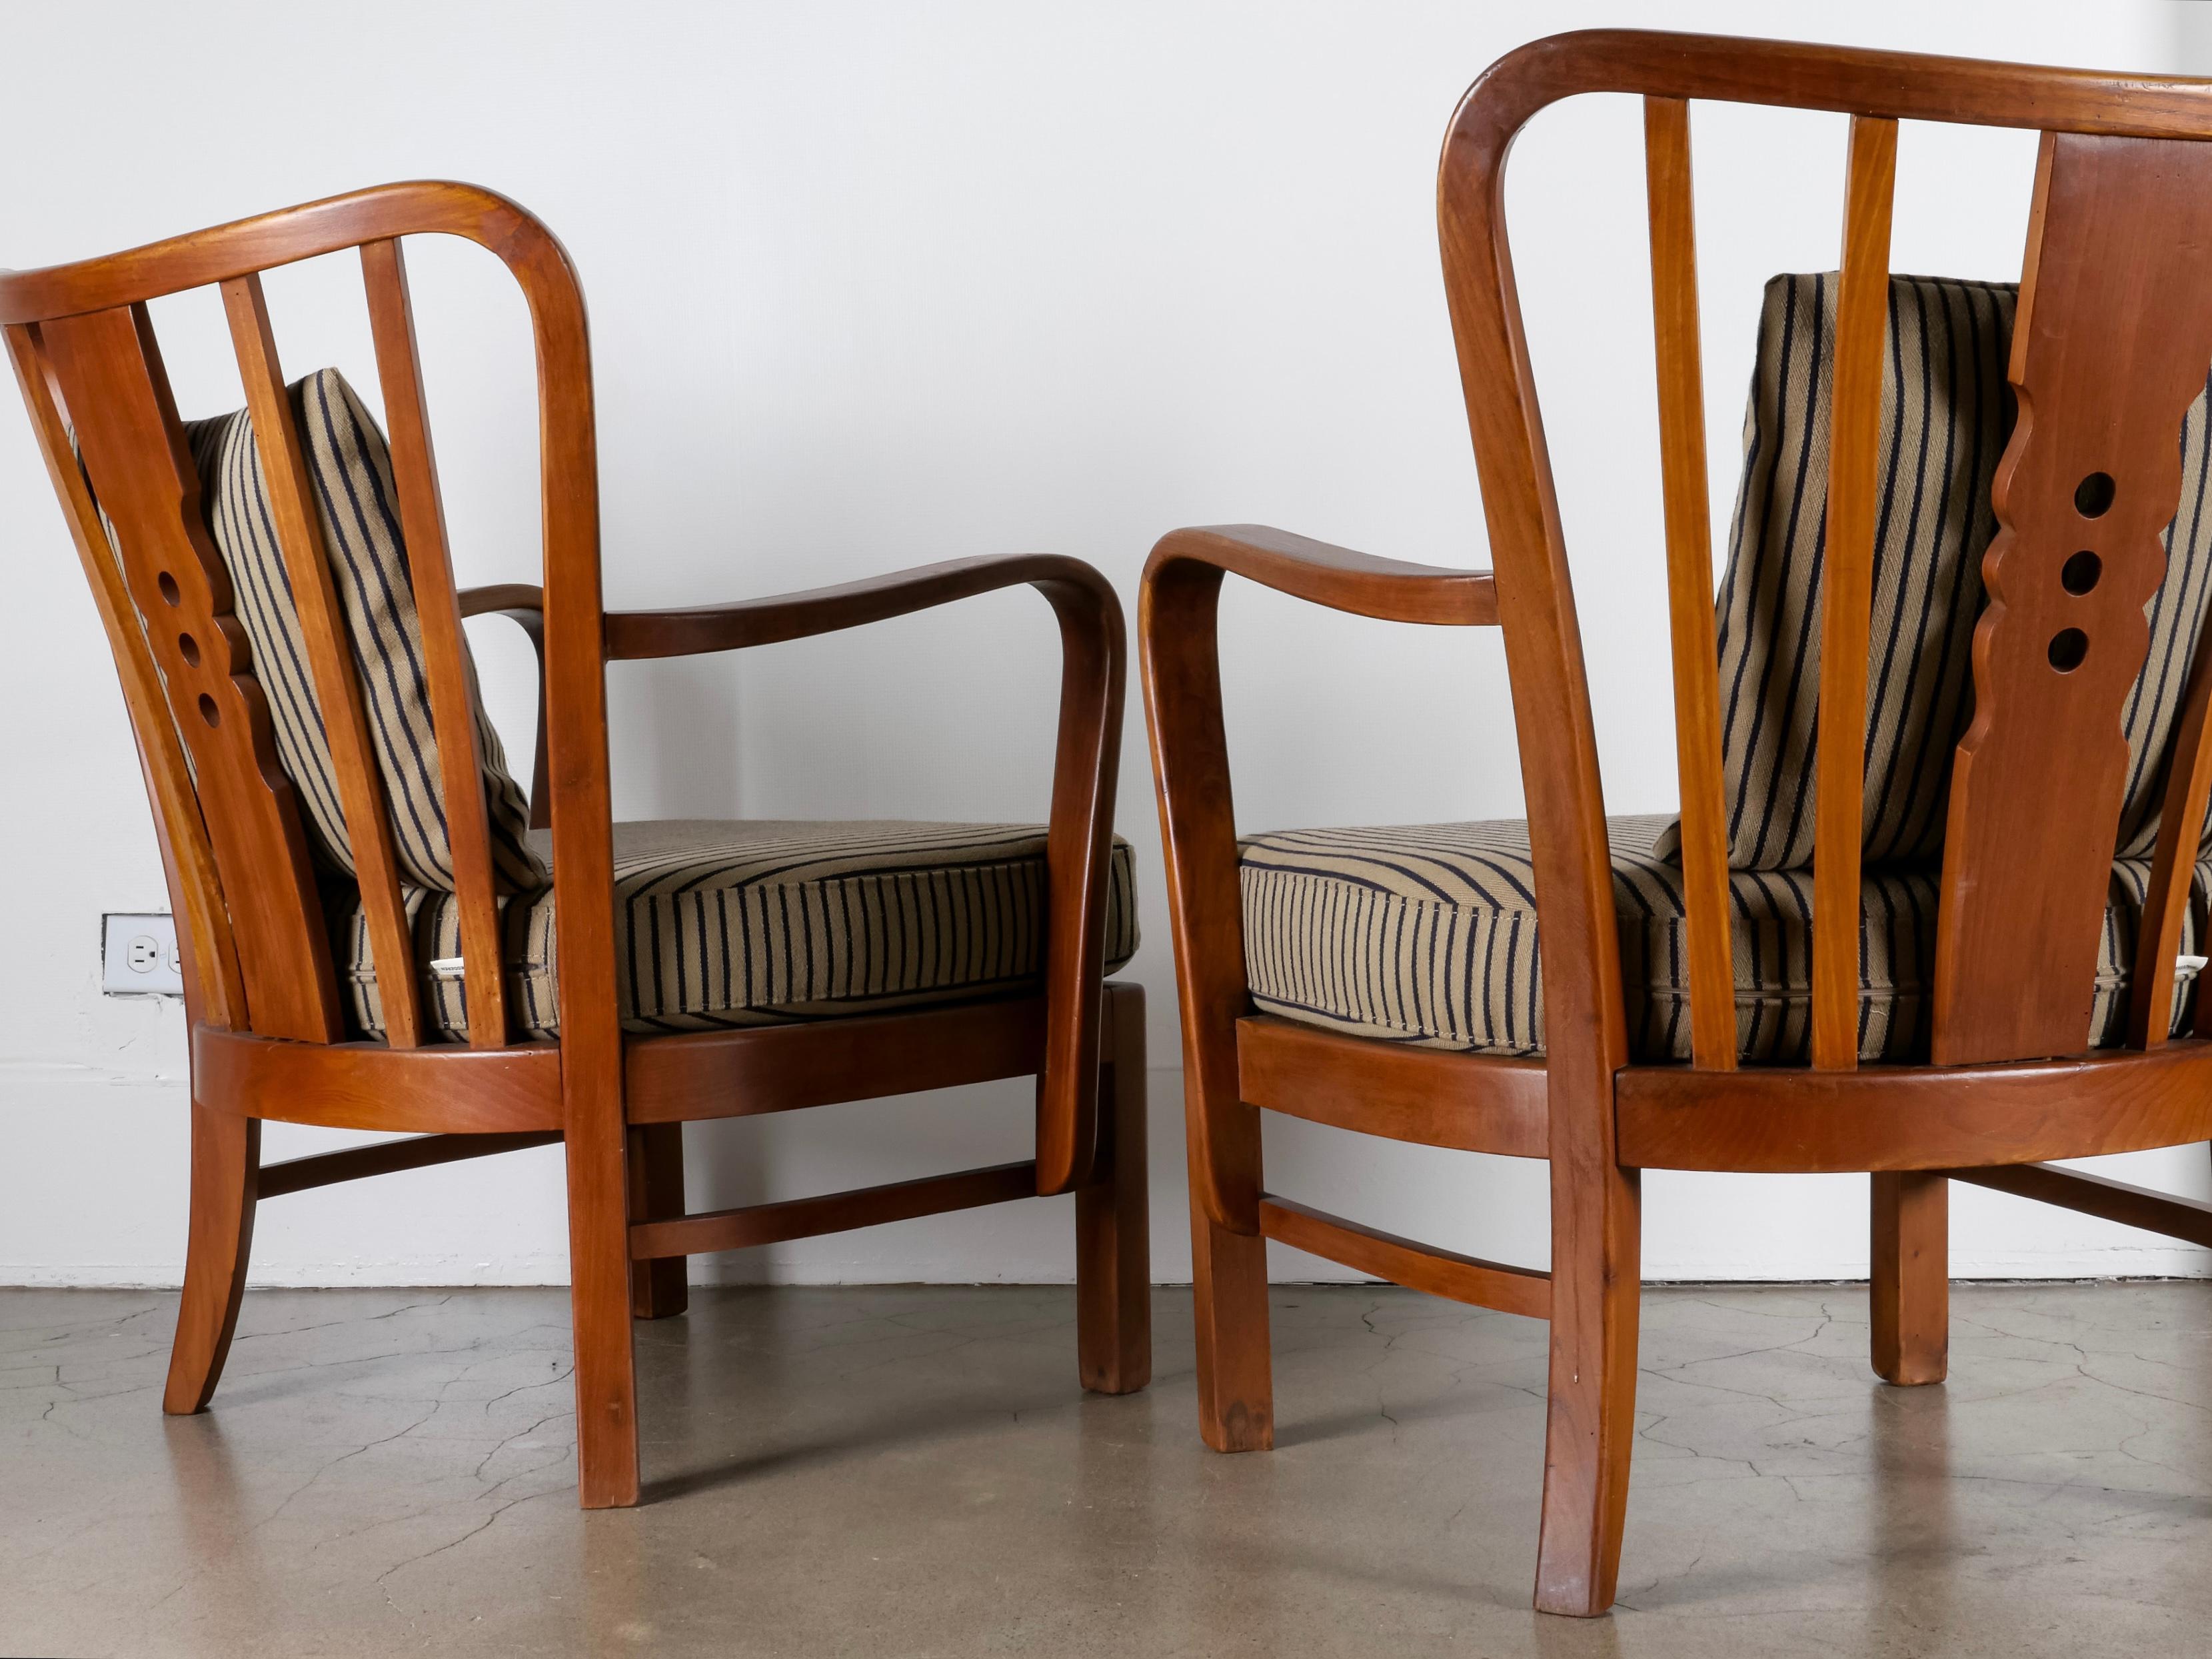 Merveilleuse paire de chaises longues importées du Danemark. Modèle 1588, fabriqué par Fritz Hansen dans les années 1930. Cadre en chêne massif et coussins en laine danoise rayée fraîchement rembourrés. Rare et en excellent état vintage. Vendu par